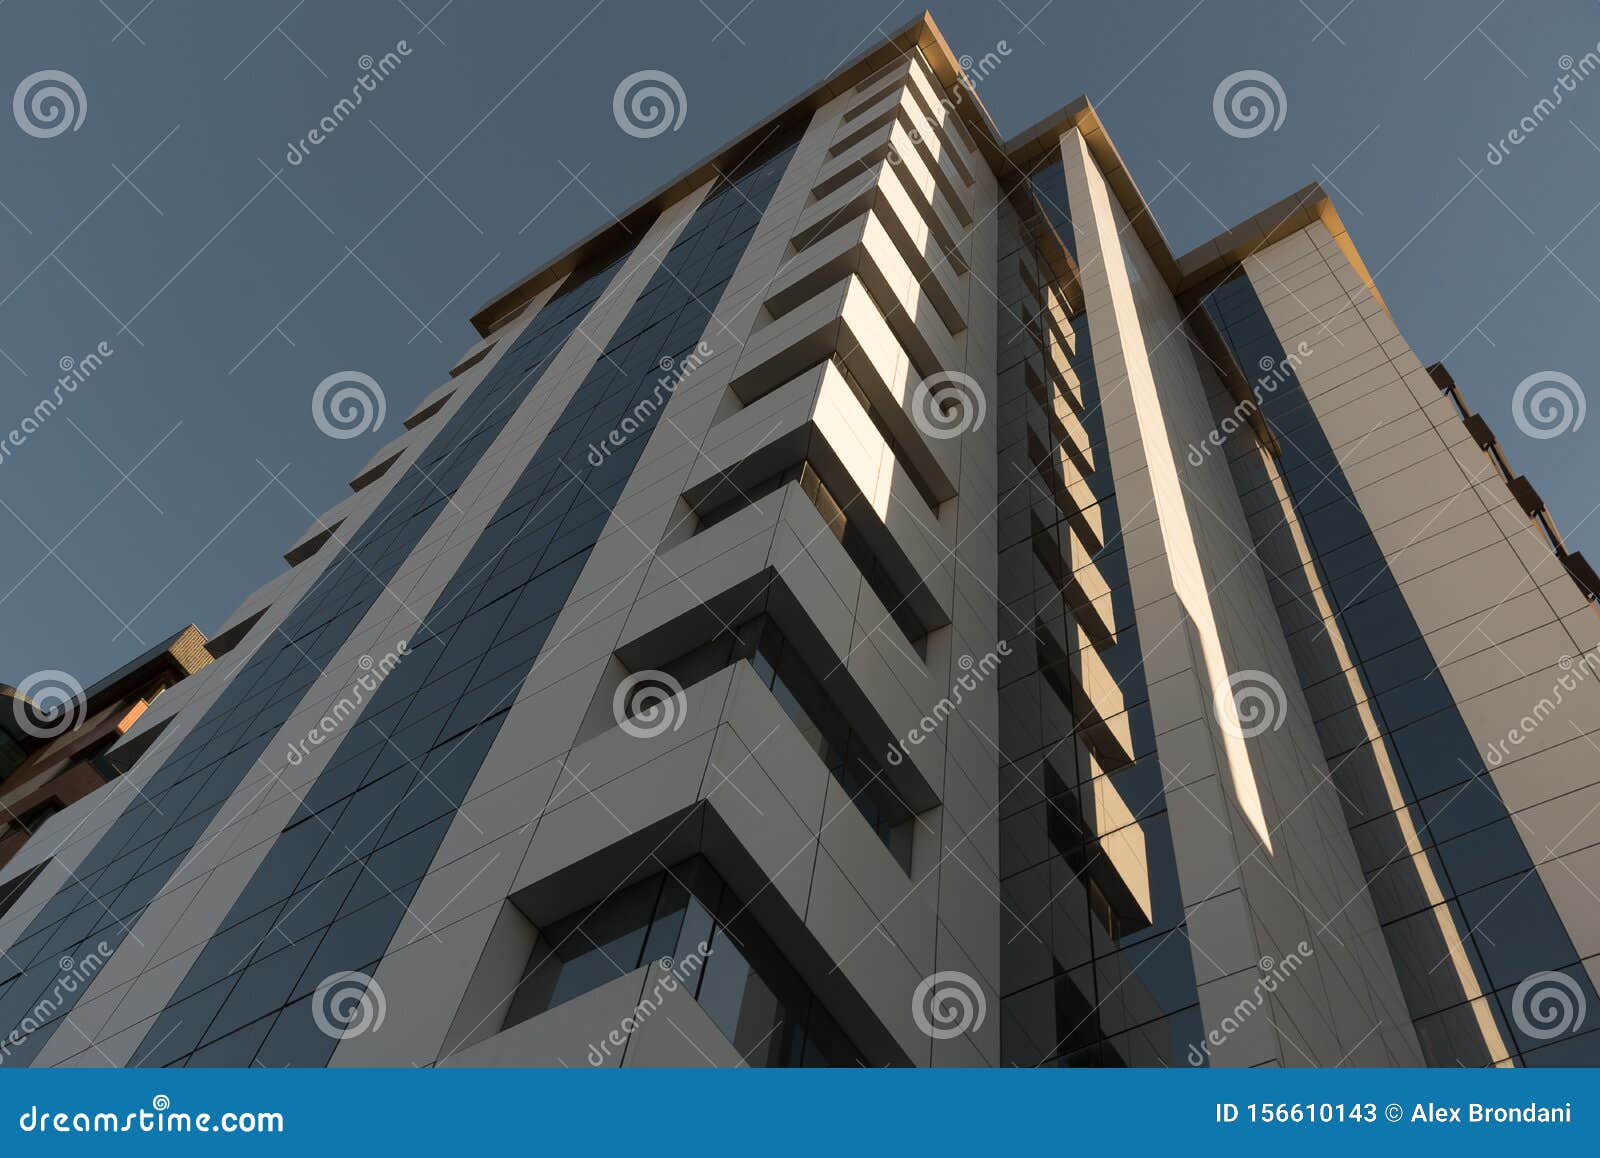 the glazed faÃÂ§ade of the residential building 09